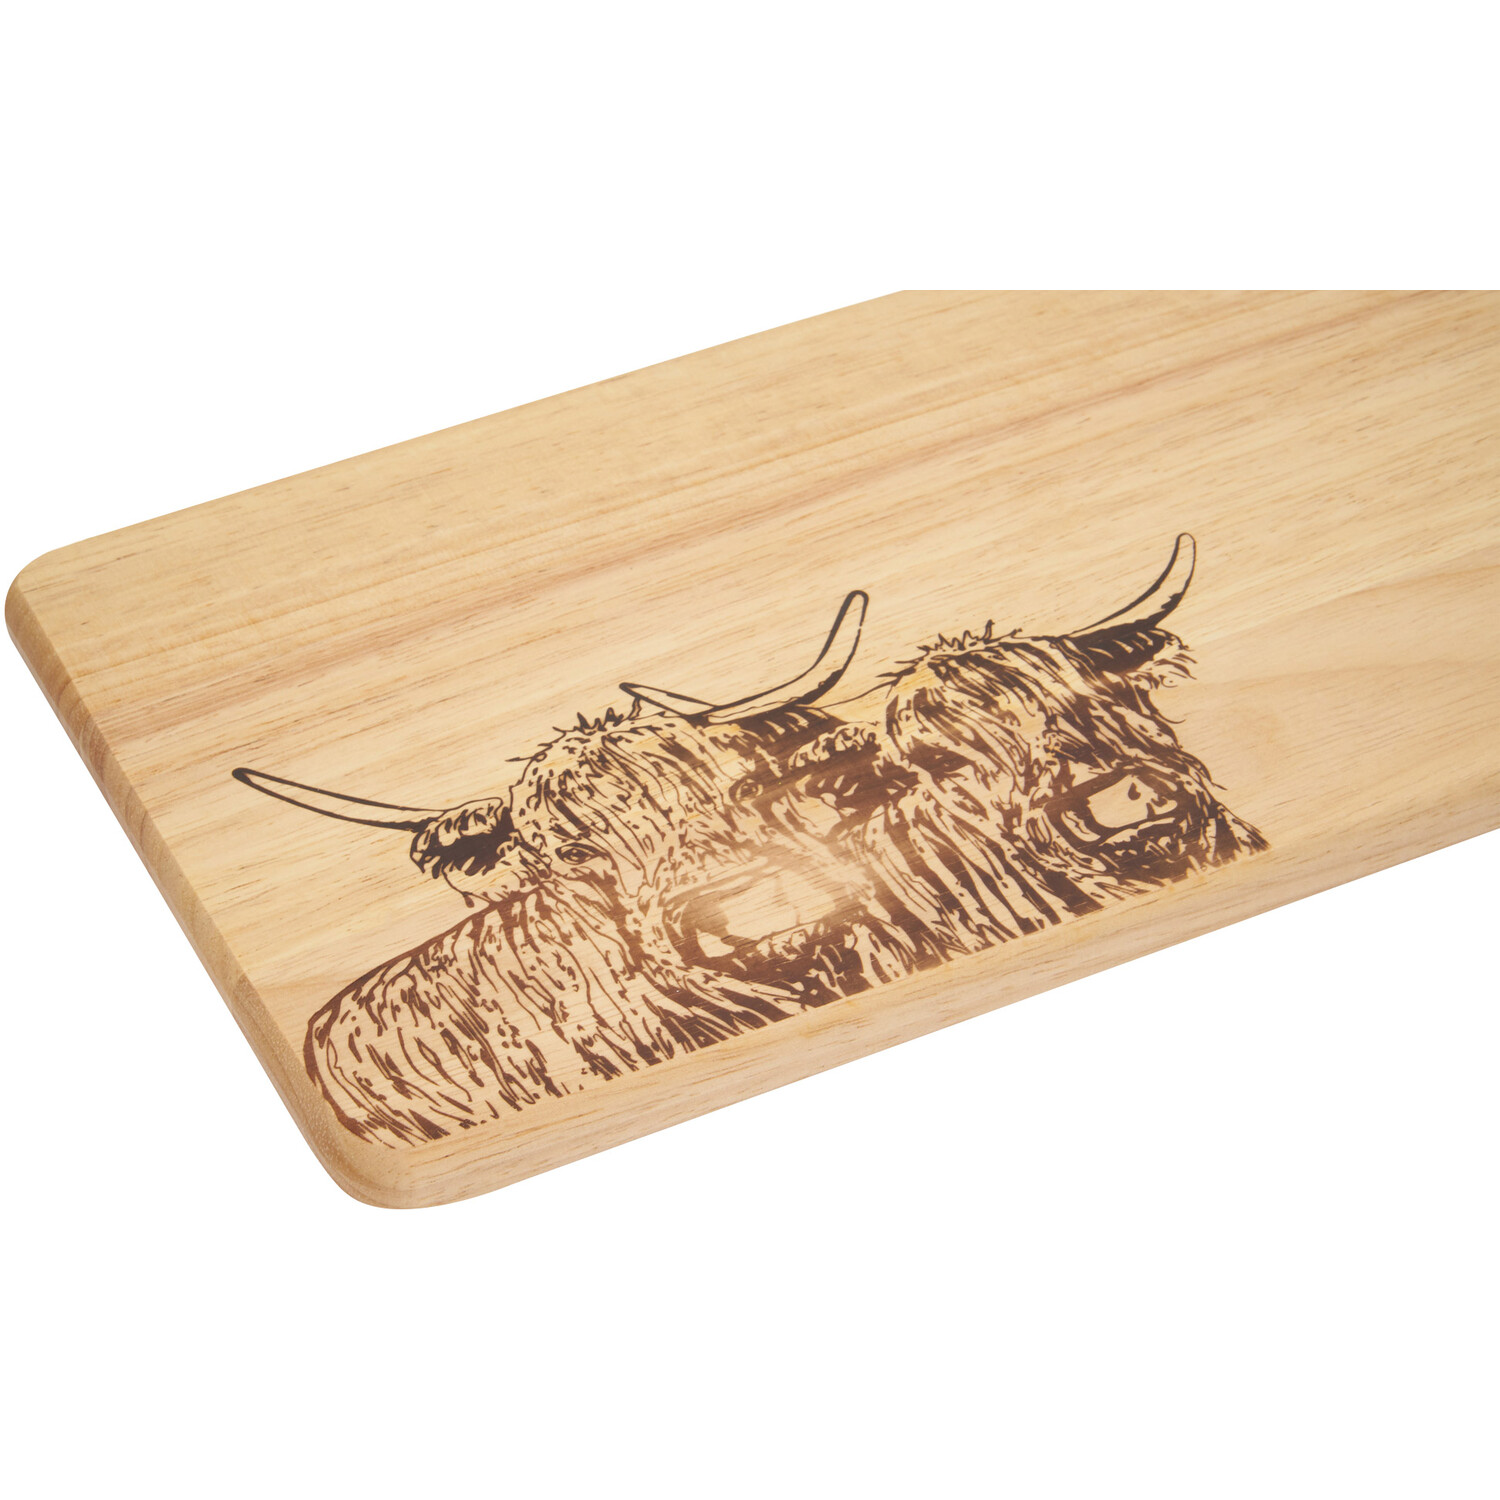 Highland Cow Paddle Chopping Board - Oak Image 2